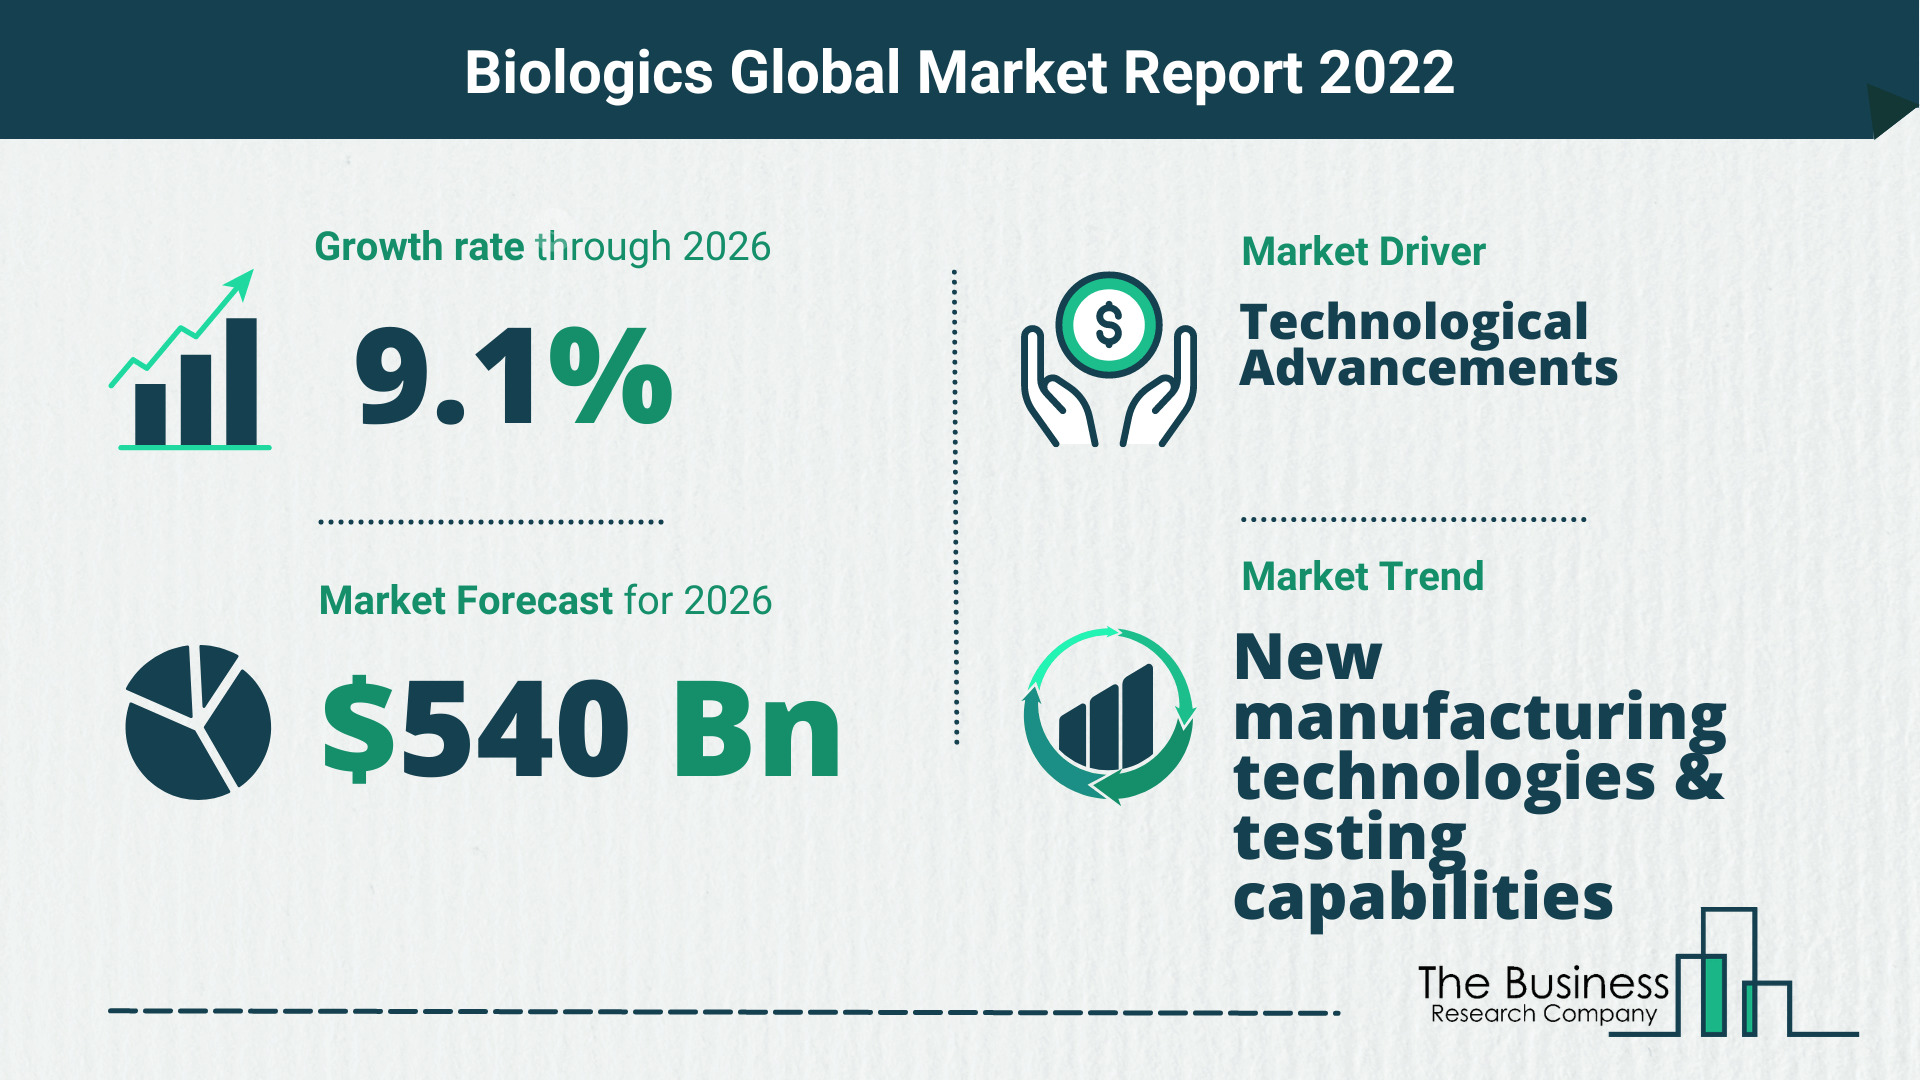 Global Biologics Market